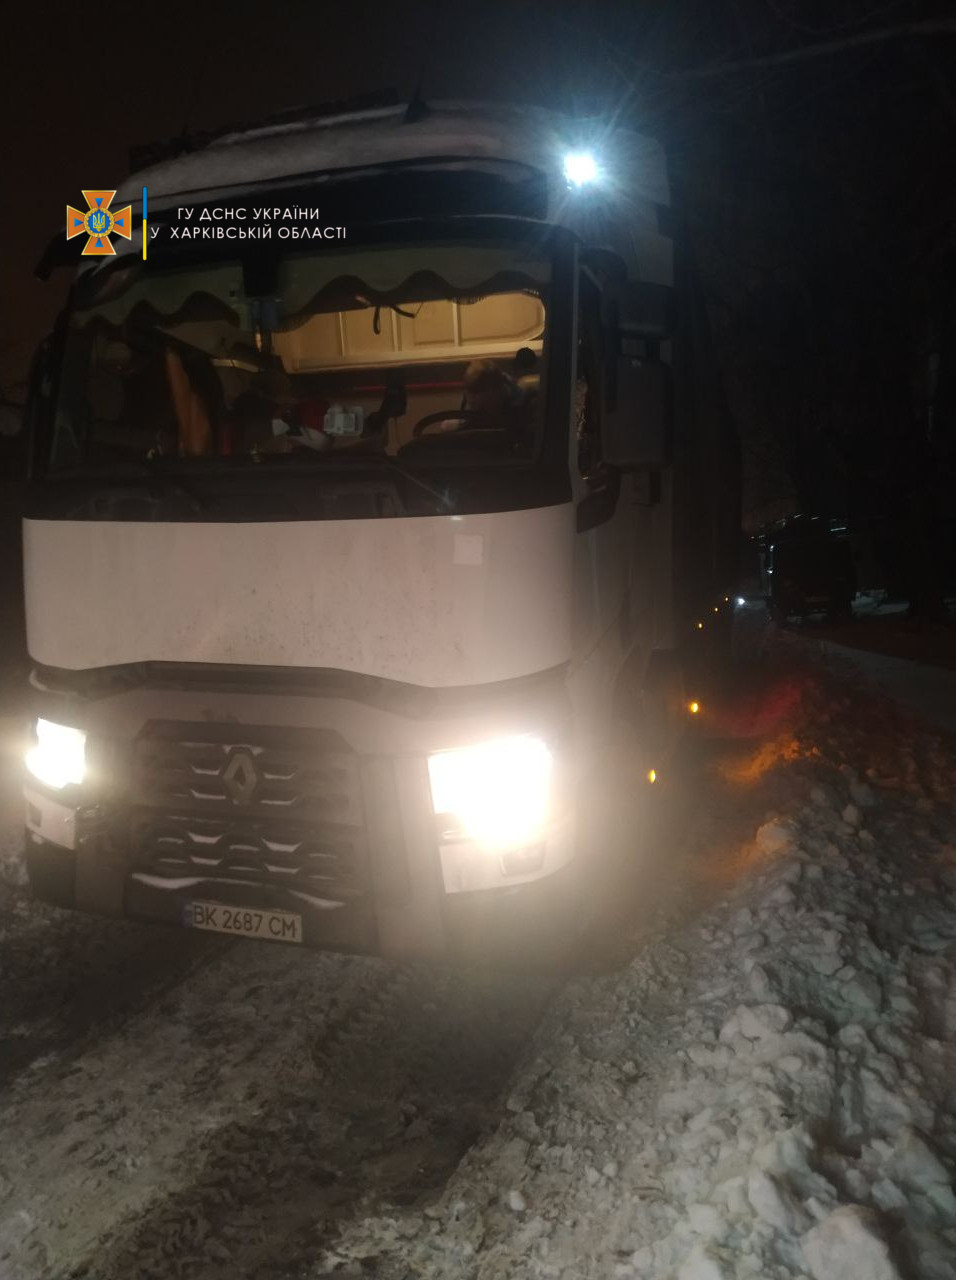 В Харькове спасатели вытащили застрявший в сугробе грузовик с медицинским кислородом